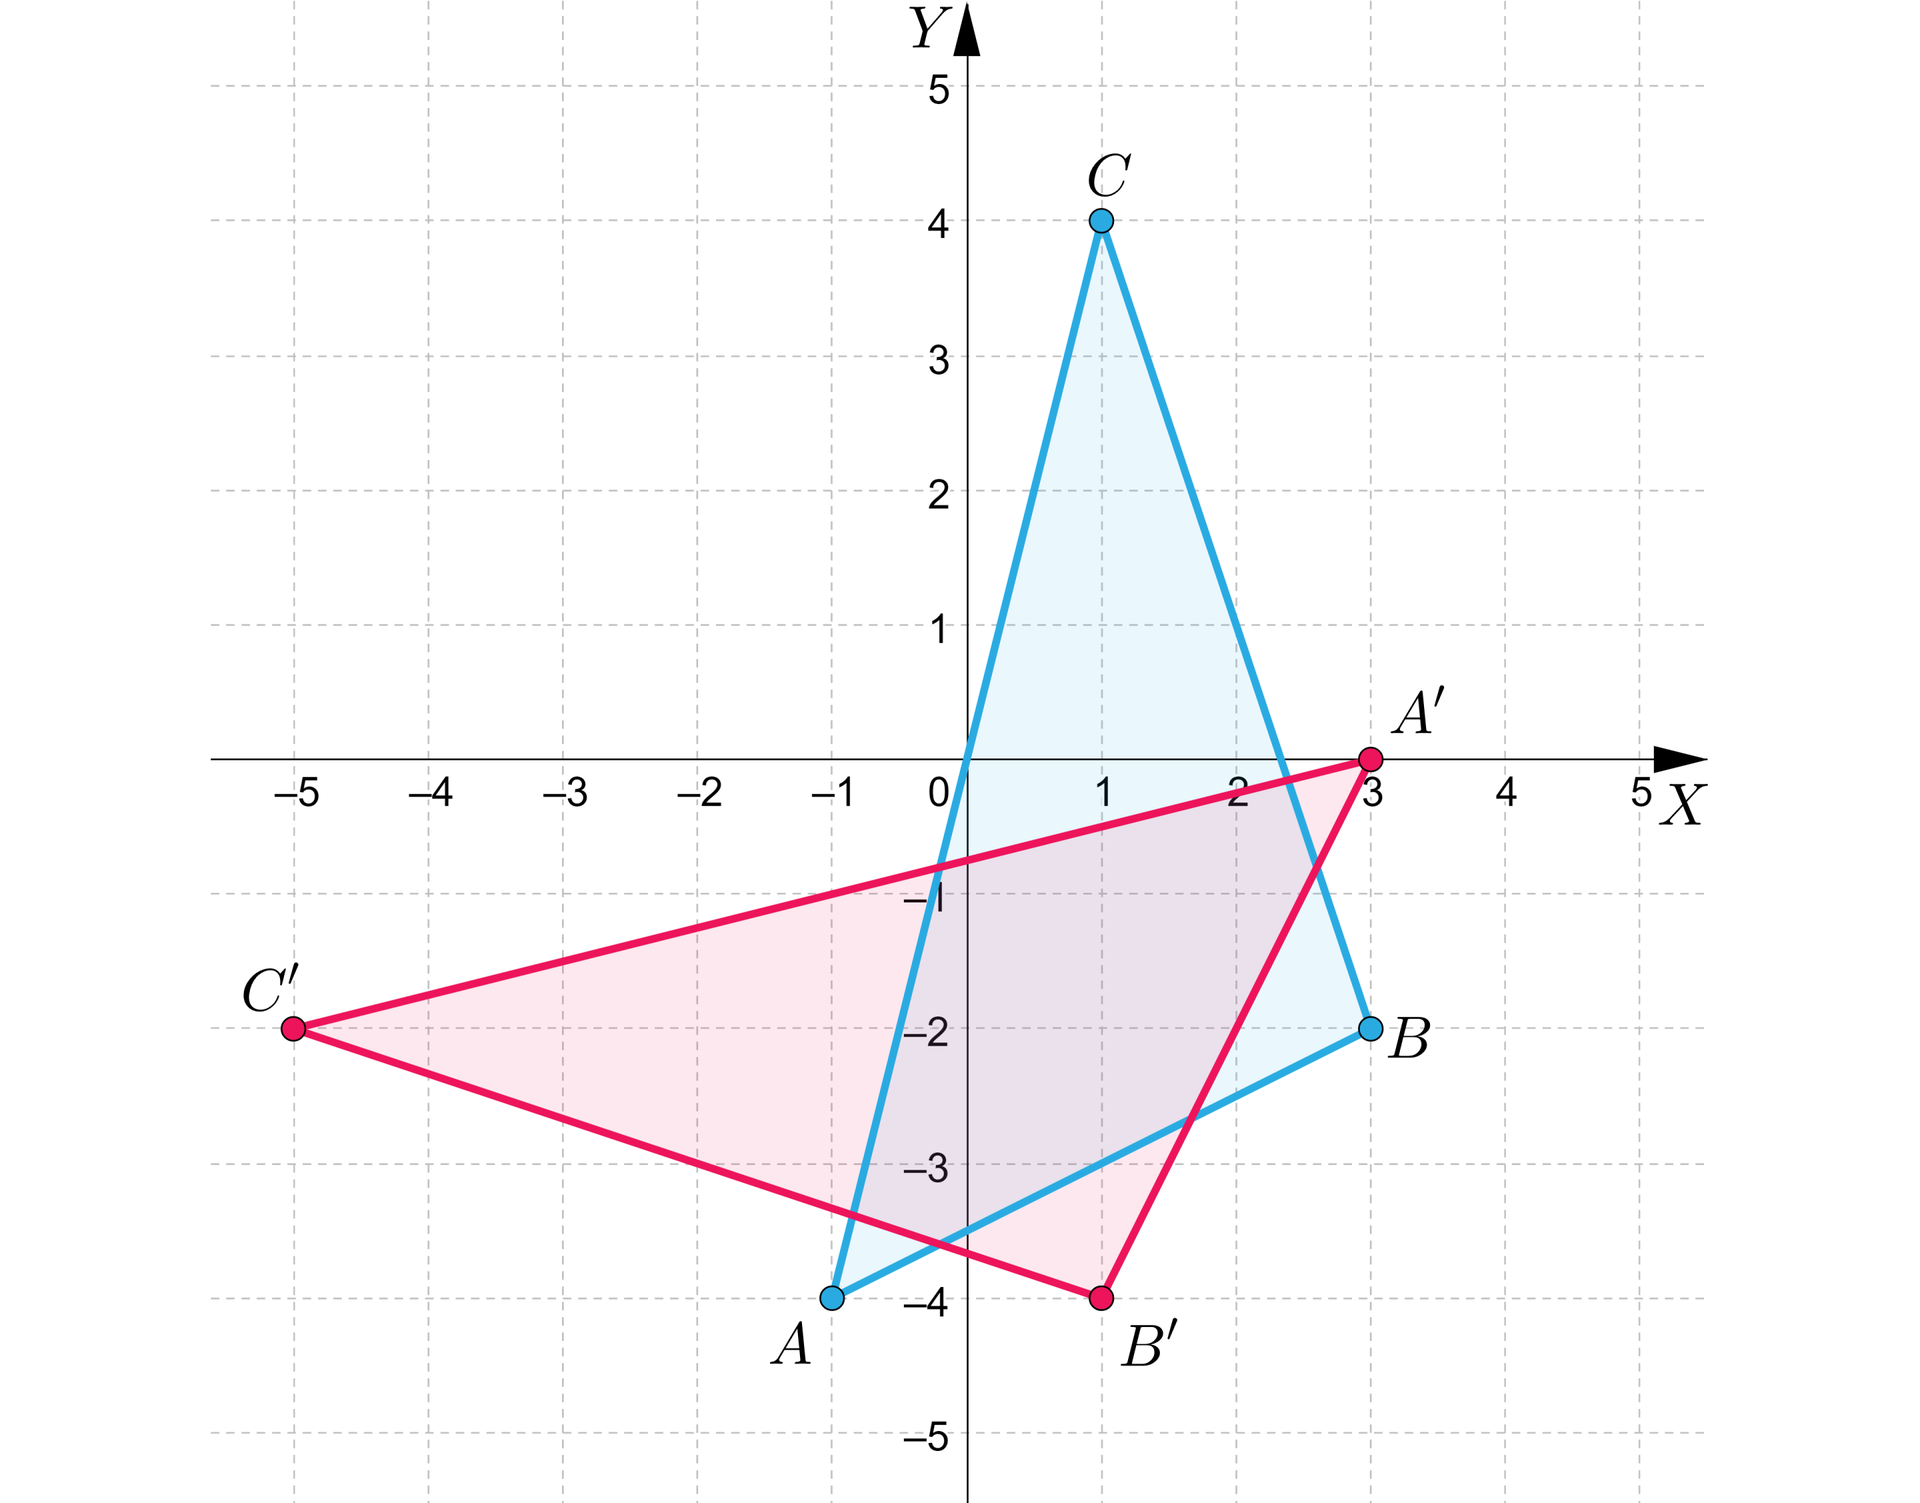 Grafika przedstawia układ współrzędnych o pionowej osi y od minus 5 do 5 i poziomej osi x od minus 5 do pięciu. Na płaszczyźnie znajdują się dwa trójkąty. Pierwszy o wierzchołkach: A, B, C. Punkt A ma współrzędne: nawias, minus 1, minus 4, zamknięcie nawiasu. Punkt B ma współrzędne: nawias, 3, minus 2, zamknięcie nawiasu. Punkt C ma współrzędne: nawias, 1, 4, zamknięcie nawiasu. Drugi o wierzchołkach: A’, B’, C’. Punkt A’ ma współrzędne: nawias, 3, 0, zamknięcie nawiasu. Punkt B’ ma współrzędne: nawias, 1, minus 4, zamknięcie nawiasu. Punkt C’ ma współrzędne: nawias, 1, 4, zamknięcie nawiasu.